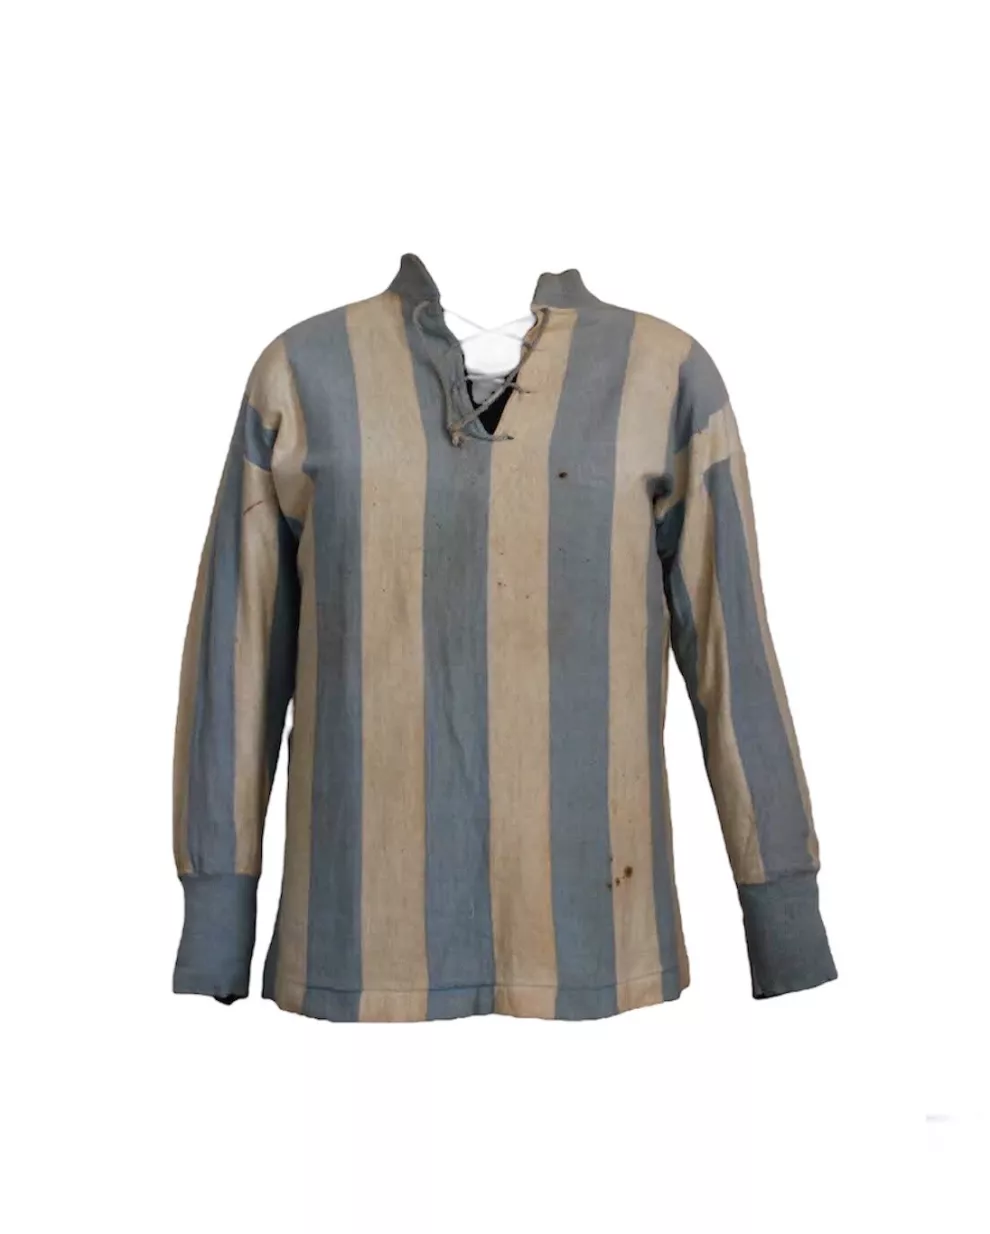 Camiseta de Cesáreo Onzari, jugador de fútbol argentino, el primero en conseguir un gol olímpico (1924)